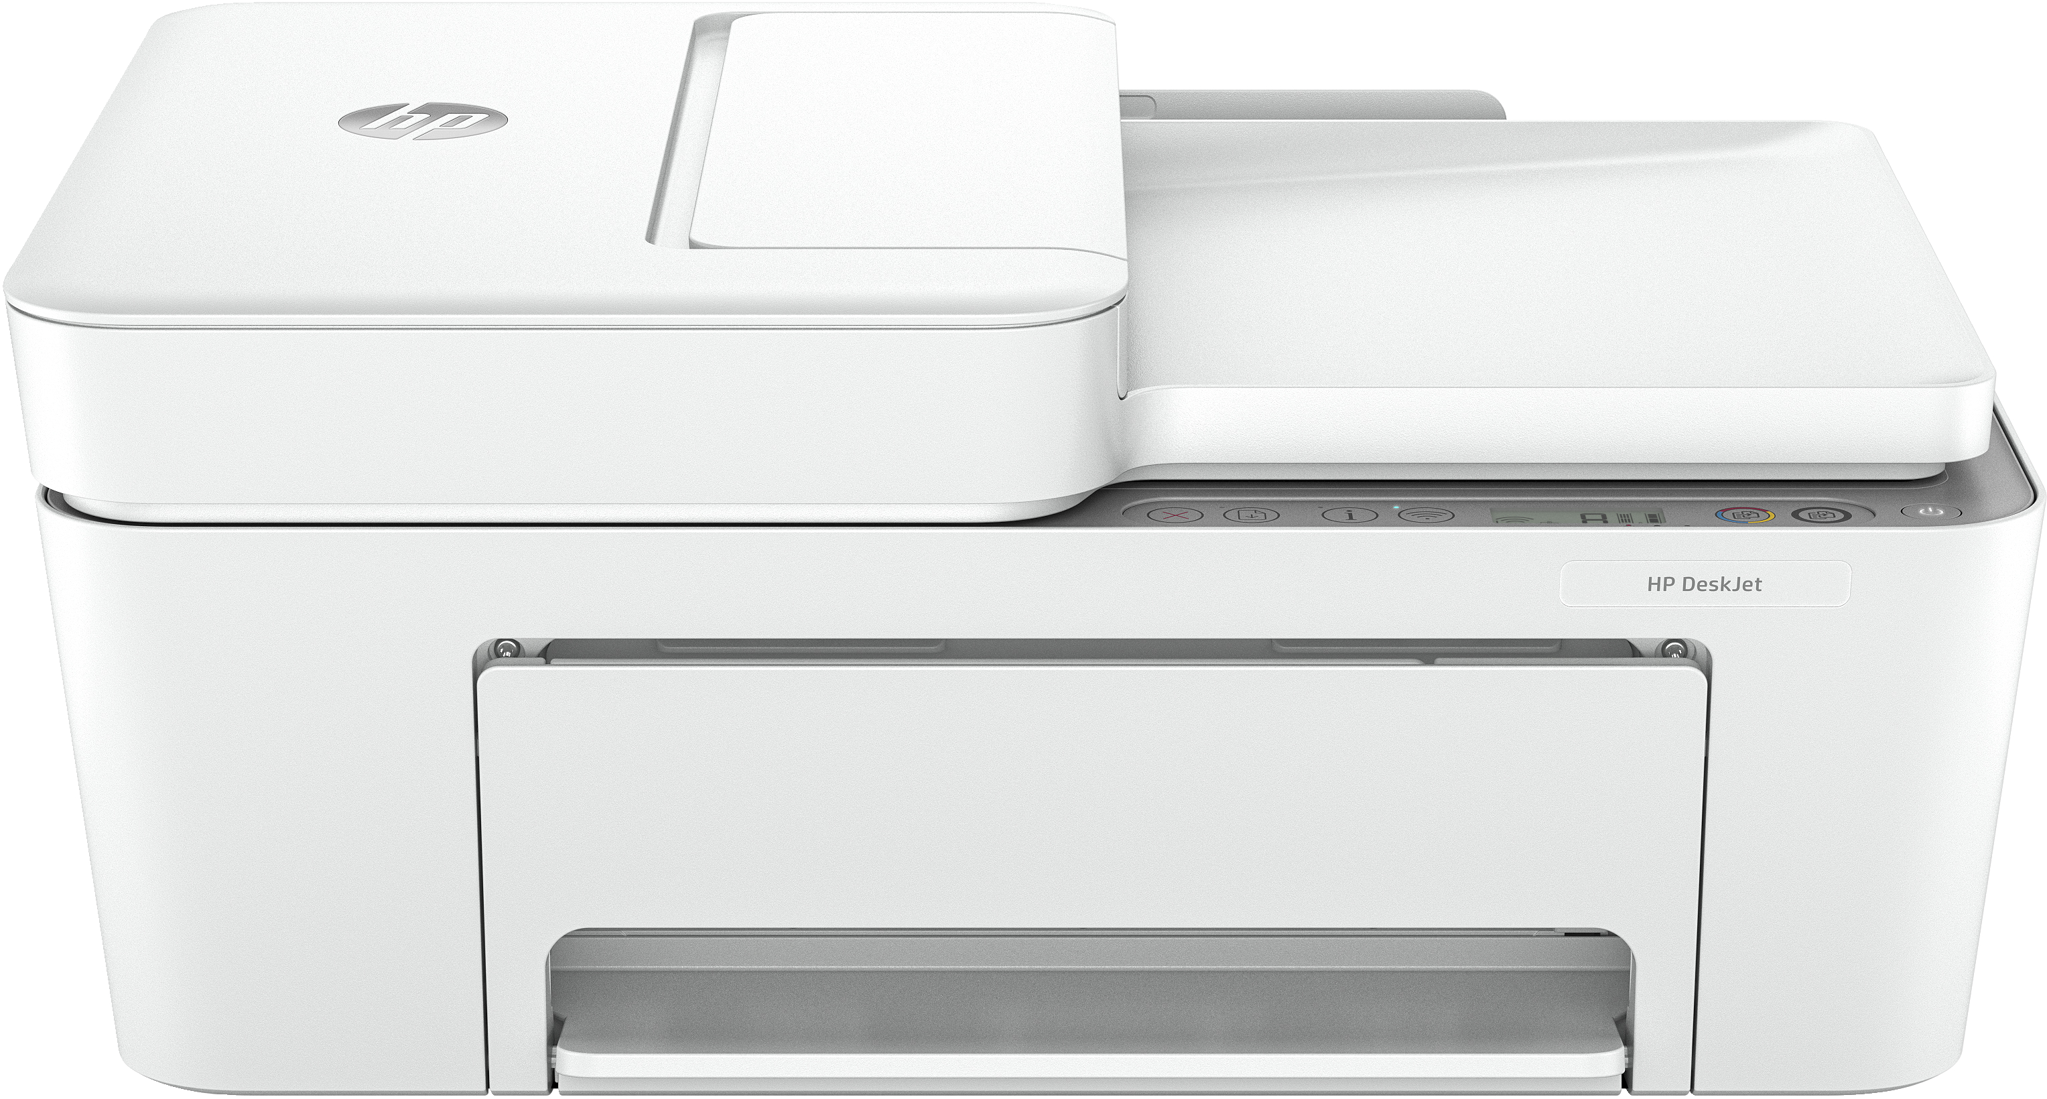 Bild von HP DeskJet 4221e All-in-One Printer - Color - Drucker für Home - Print - copy - scan - +; Instant Ink eligible; Scan to PDF - Thermal Inkjet - Farbdruck - 4800 x 1200 DPI - Farbkopieren - A4 - Weiß